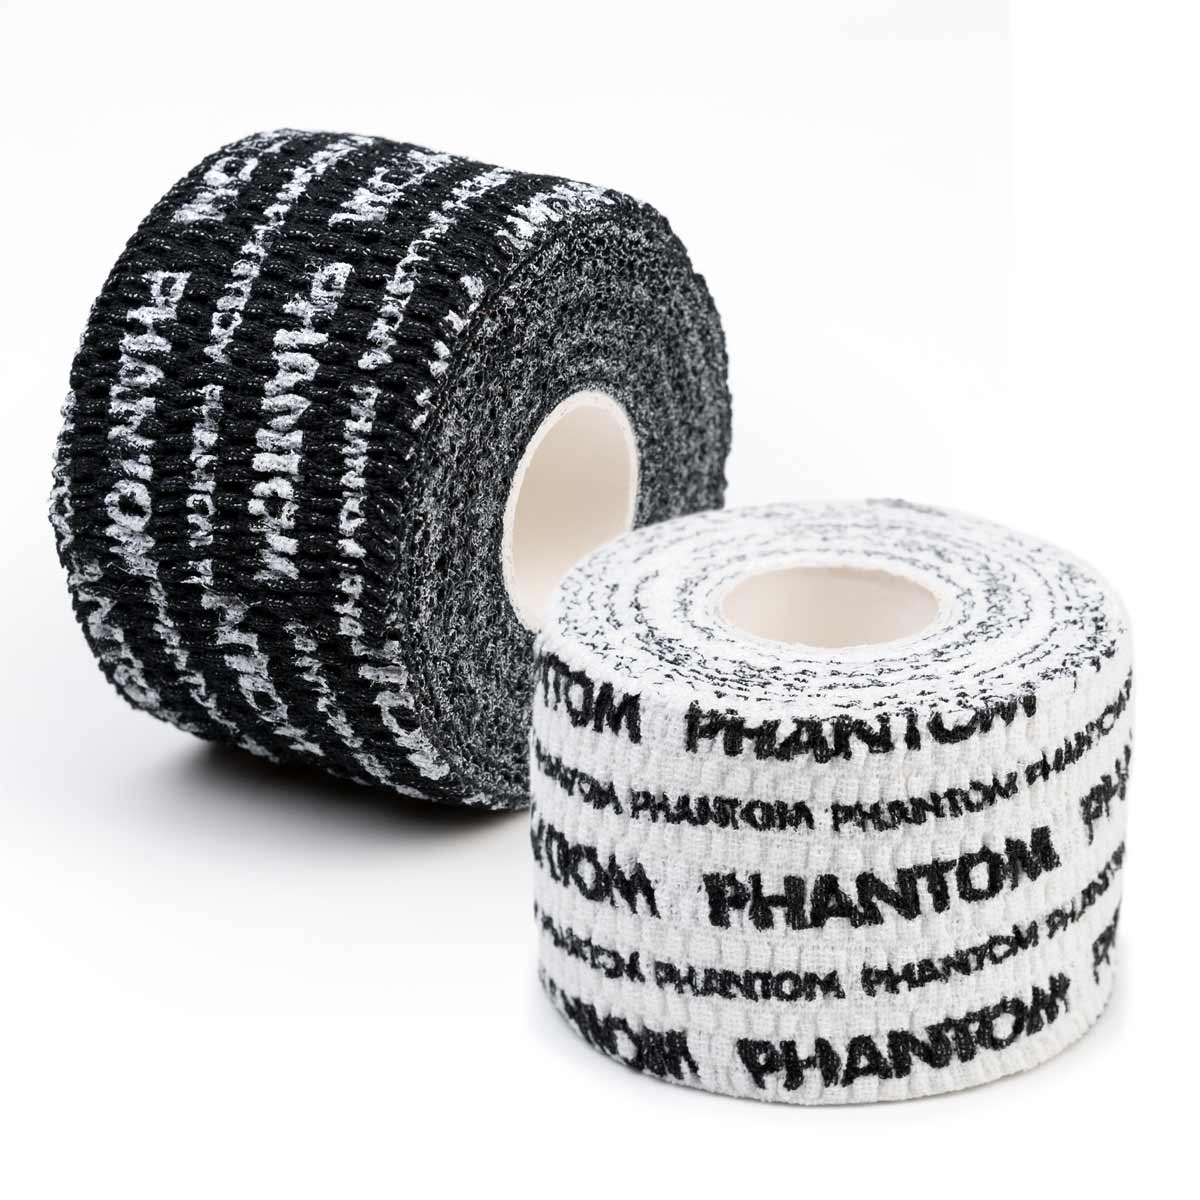 Phantom Grip Tape für Kampfsport und Fitness. Ultimativer Halt der Bandagen und an der Hantel.